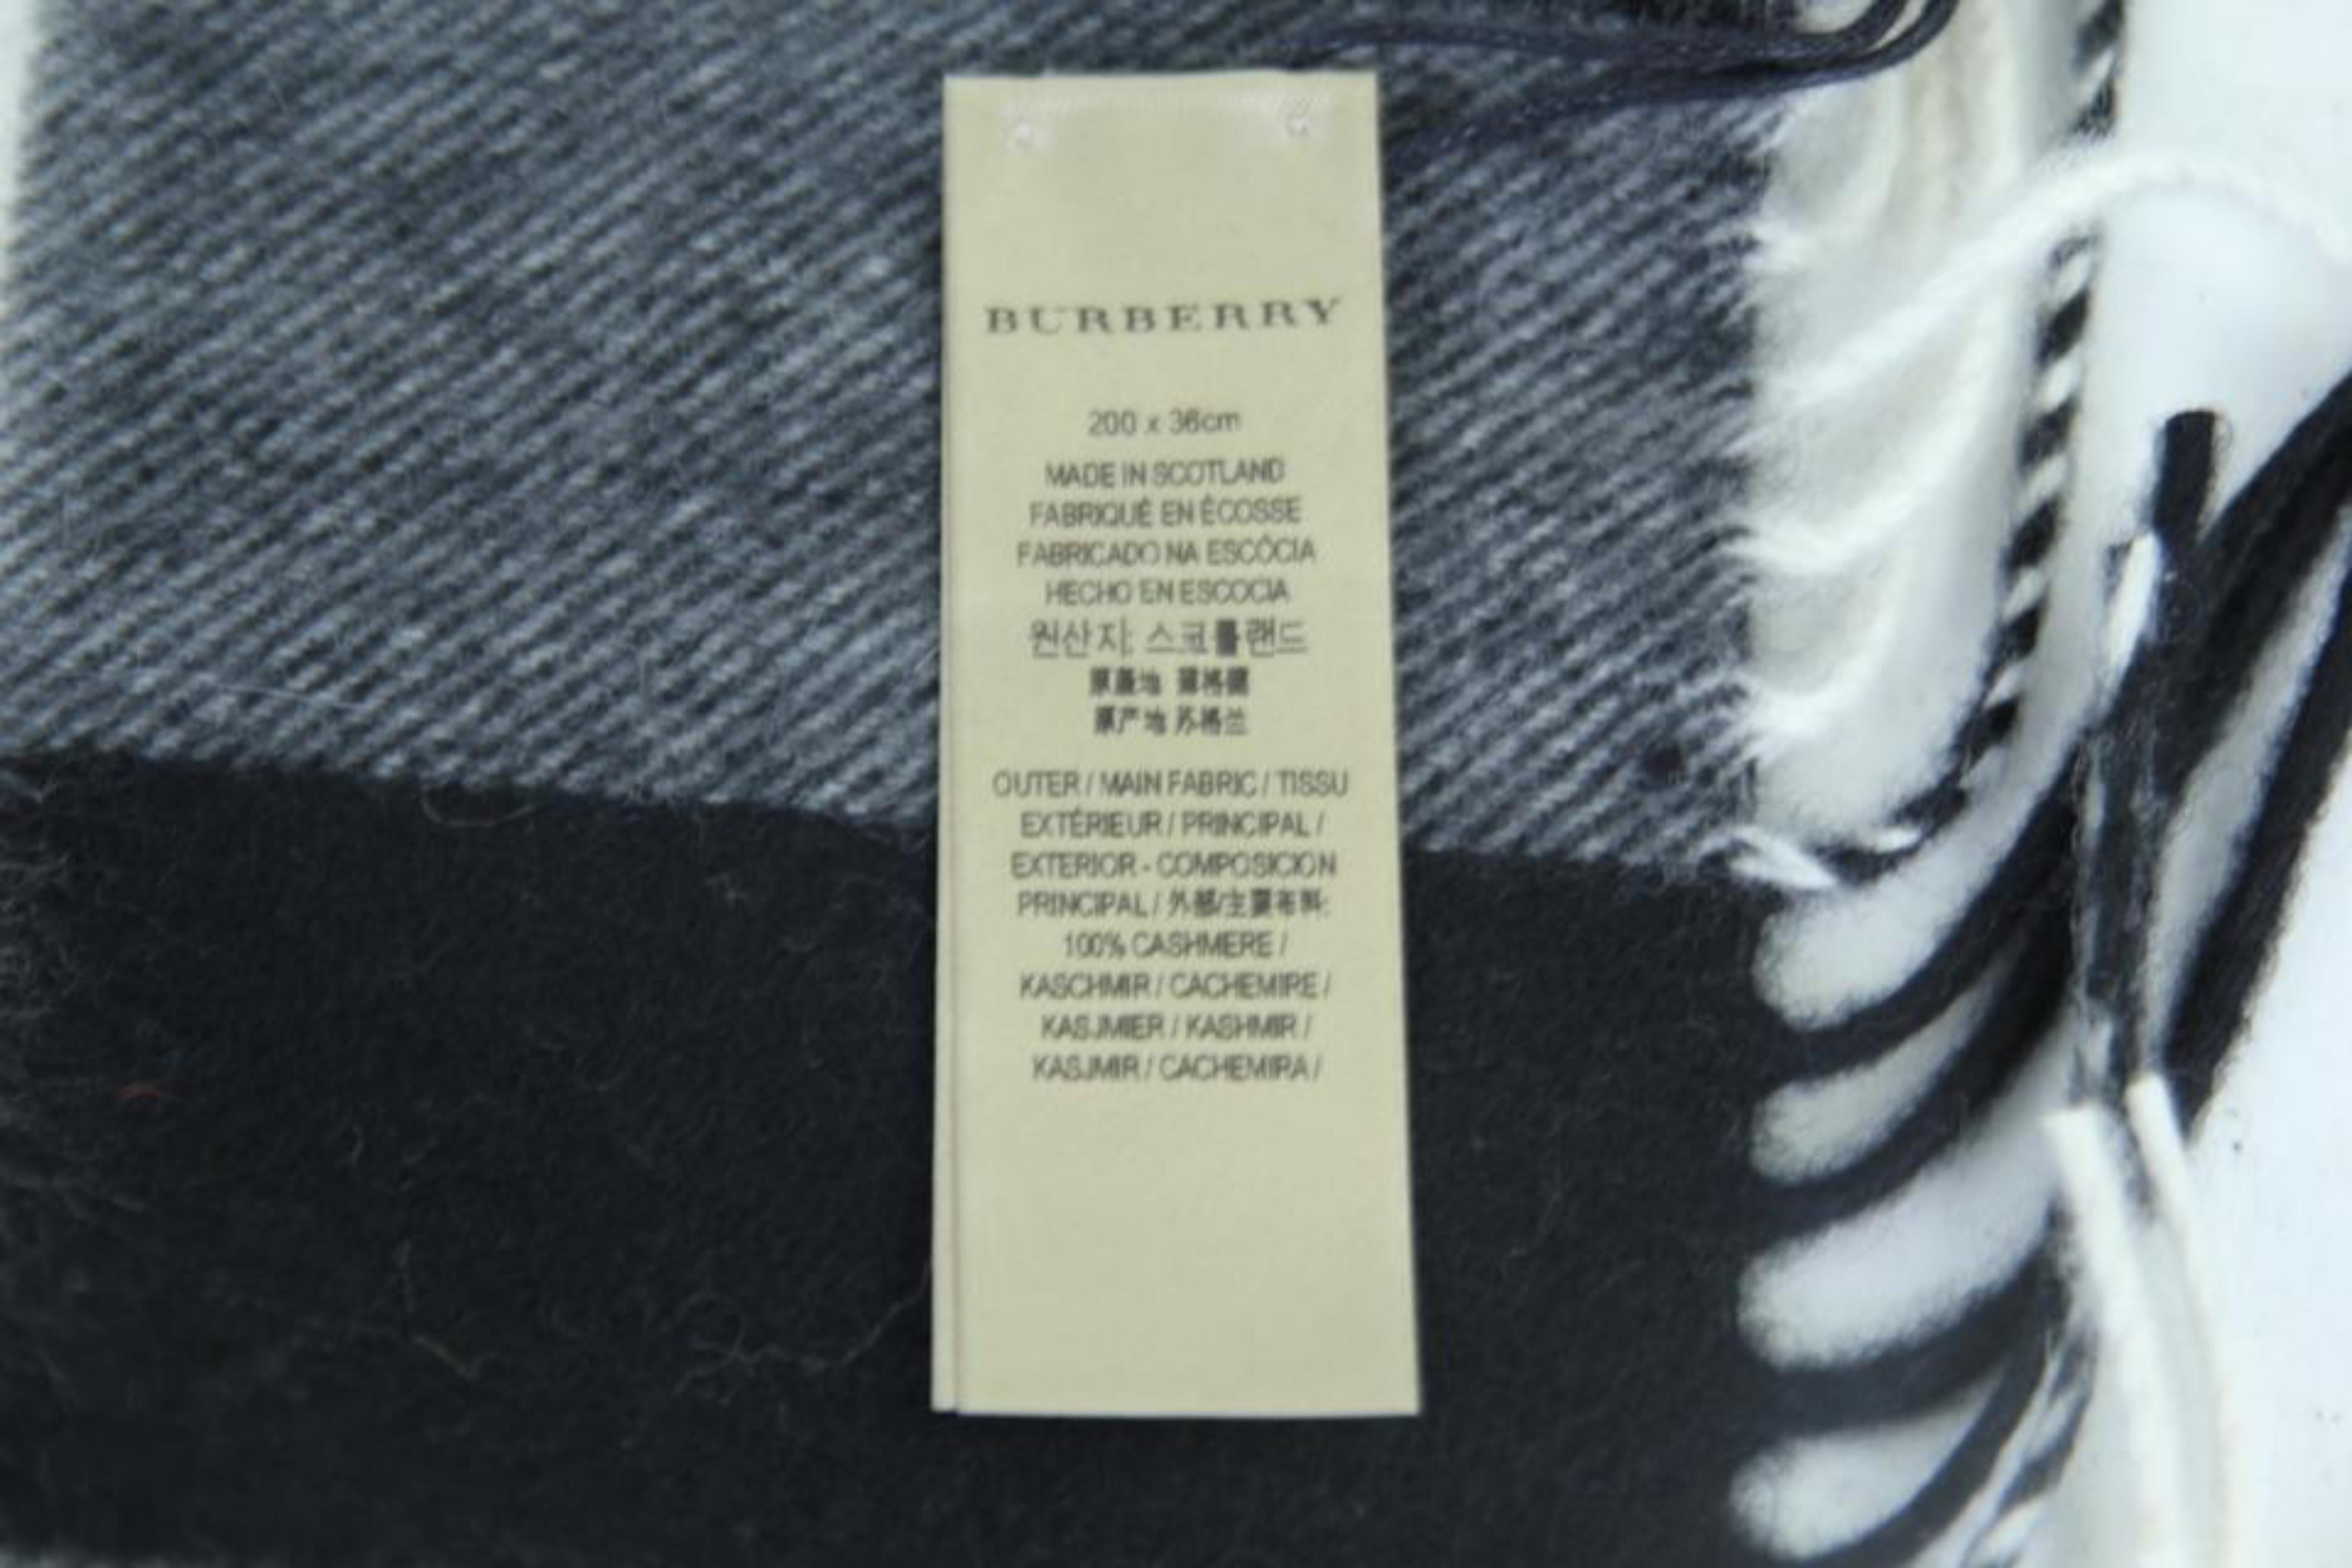 burberry price tag